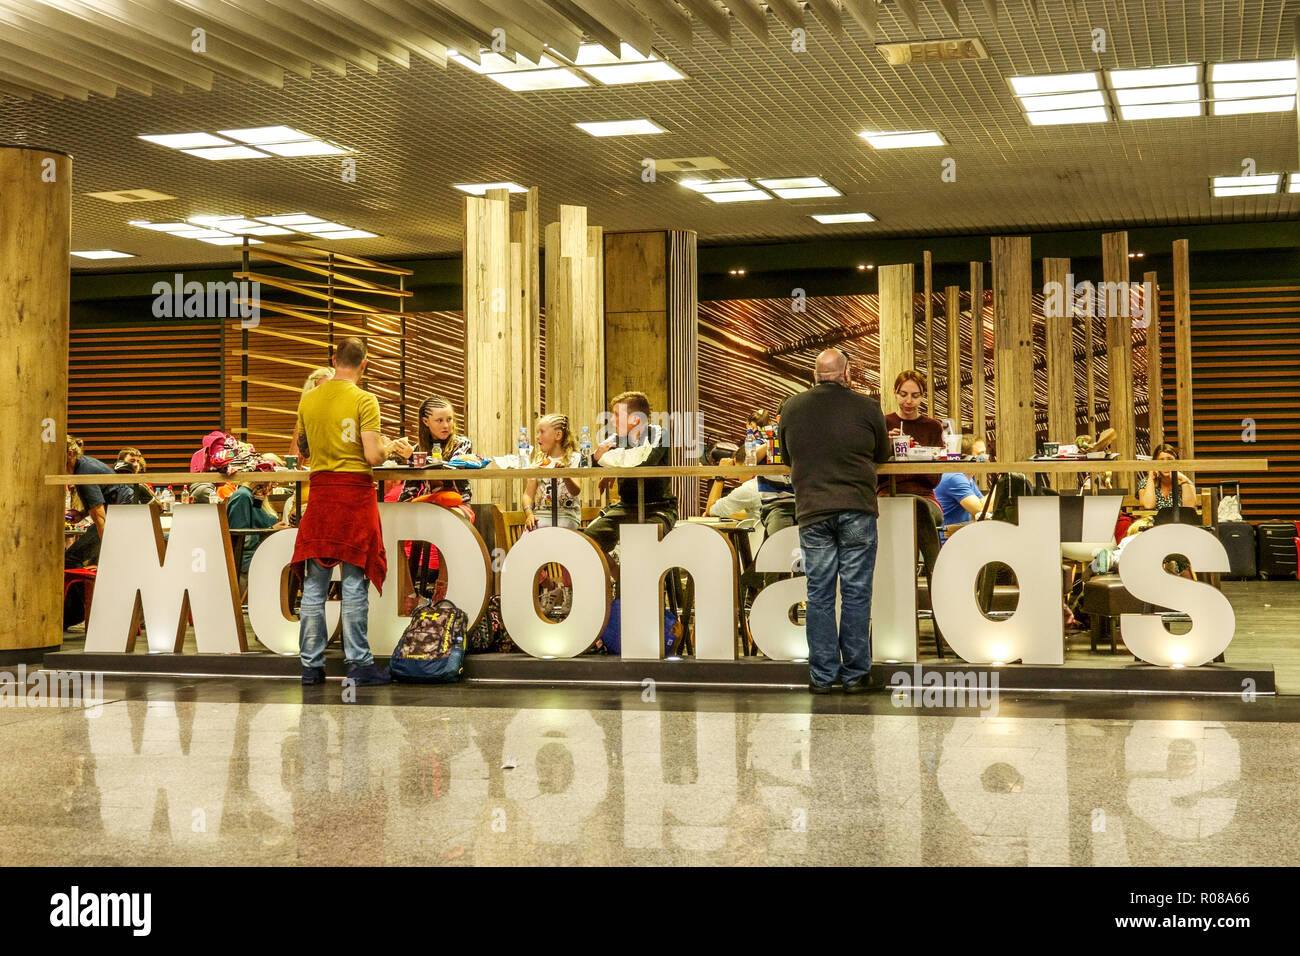 Aéroport de Palma de Mallorca, les passagers passent du temps à la restauration rapide McDonalds, aéroport de Palma Espagne, Europe Banque D'Images